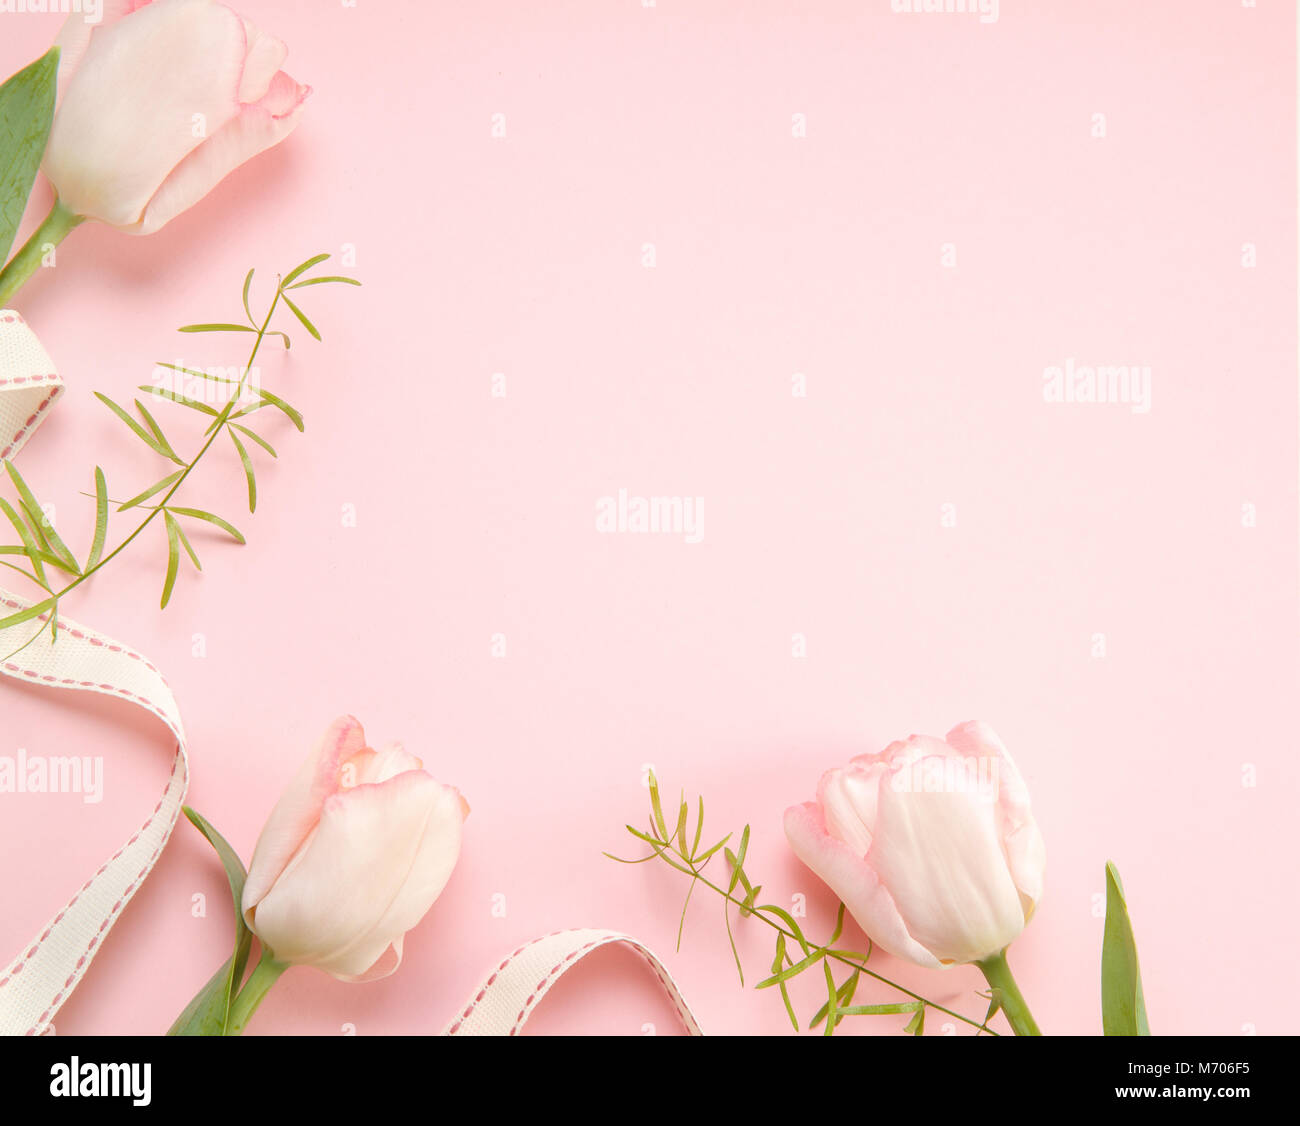 Từ kẹo ngọt đến váy cưới, hoa tulip hồng luôn là sự lựa chọn độc đáo của mọi người. Màu hồng tươi tắn và quyến rũ của chúng hãy làm say đắm biết bao người. Hãy thư giãn với những đóa hoa hồng vô cùng nữ tính trong ảnh và cảm nhận sự ấm áp và tươi vui.